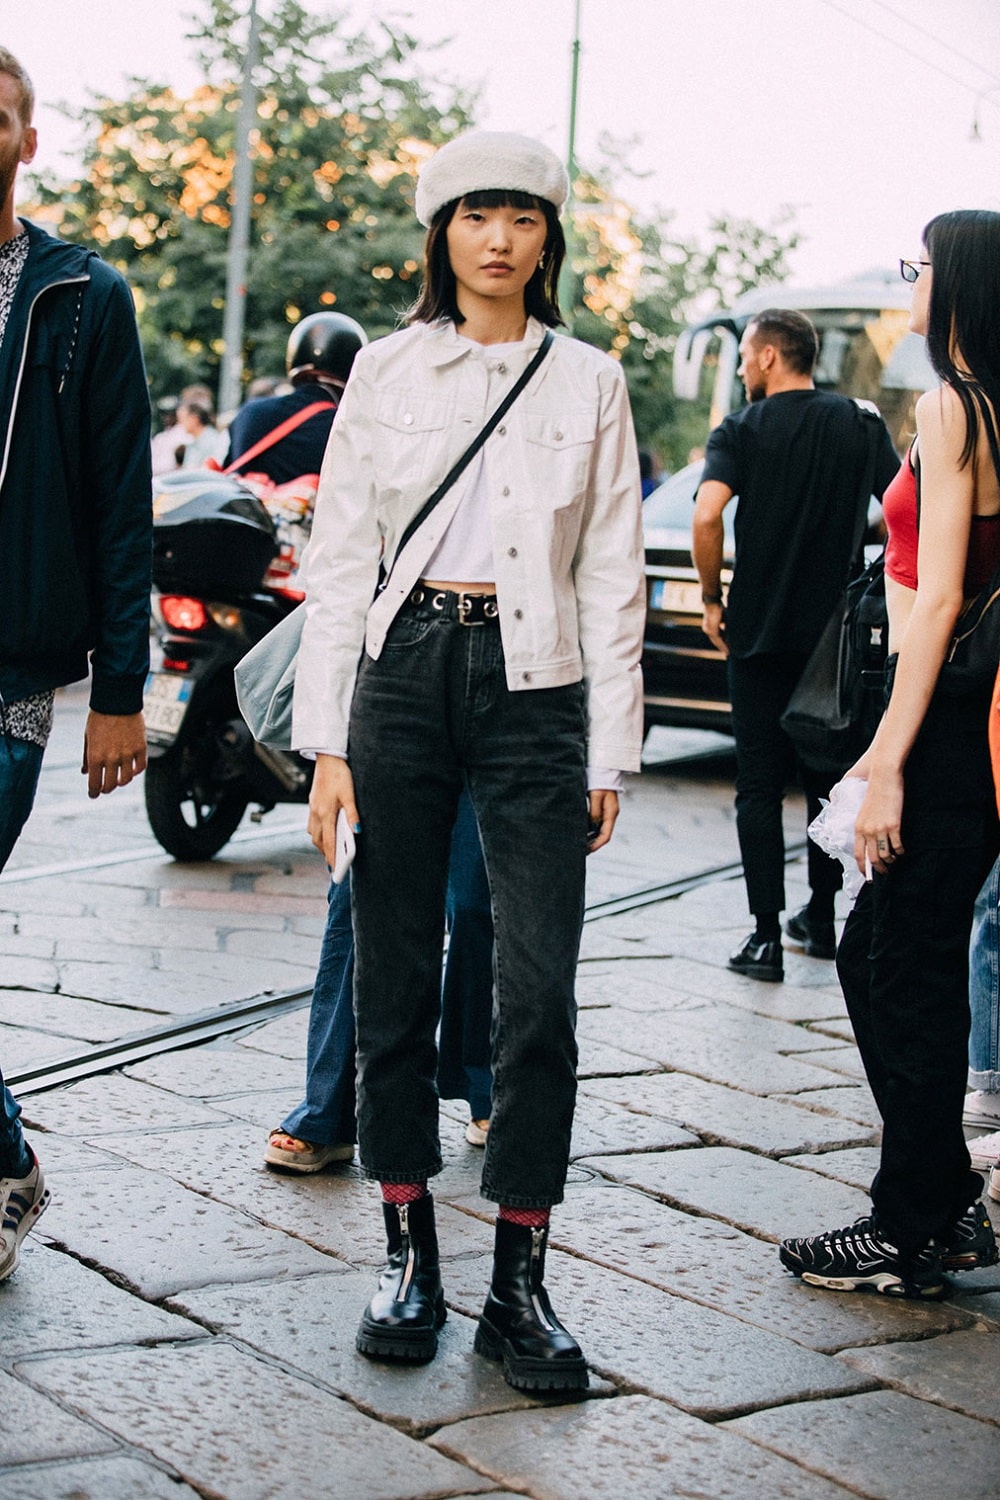 Jing Huang by Melodie Jeng - Milan Fashion Week Spring 2020 Street Style